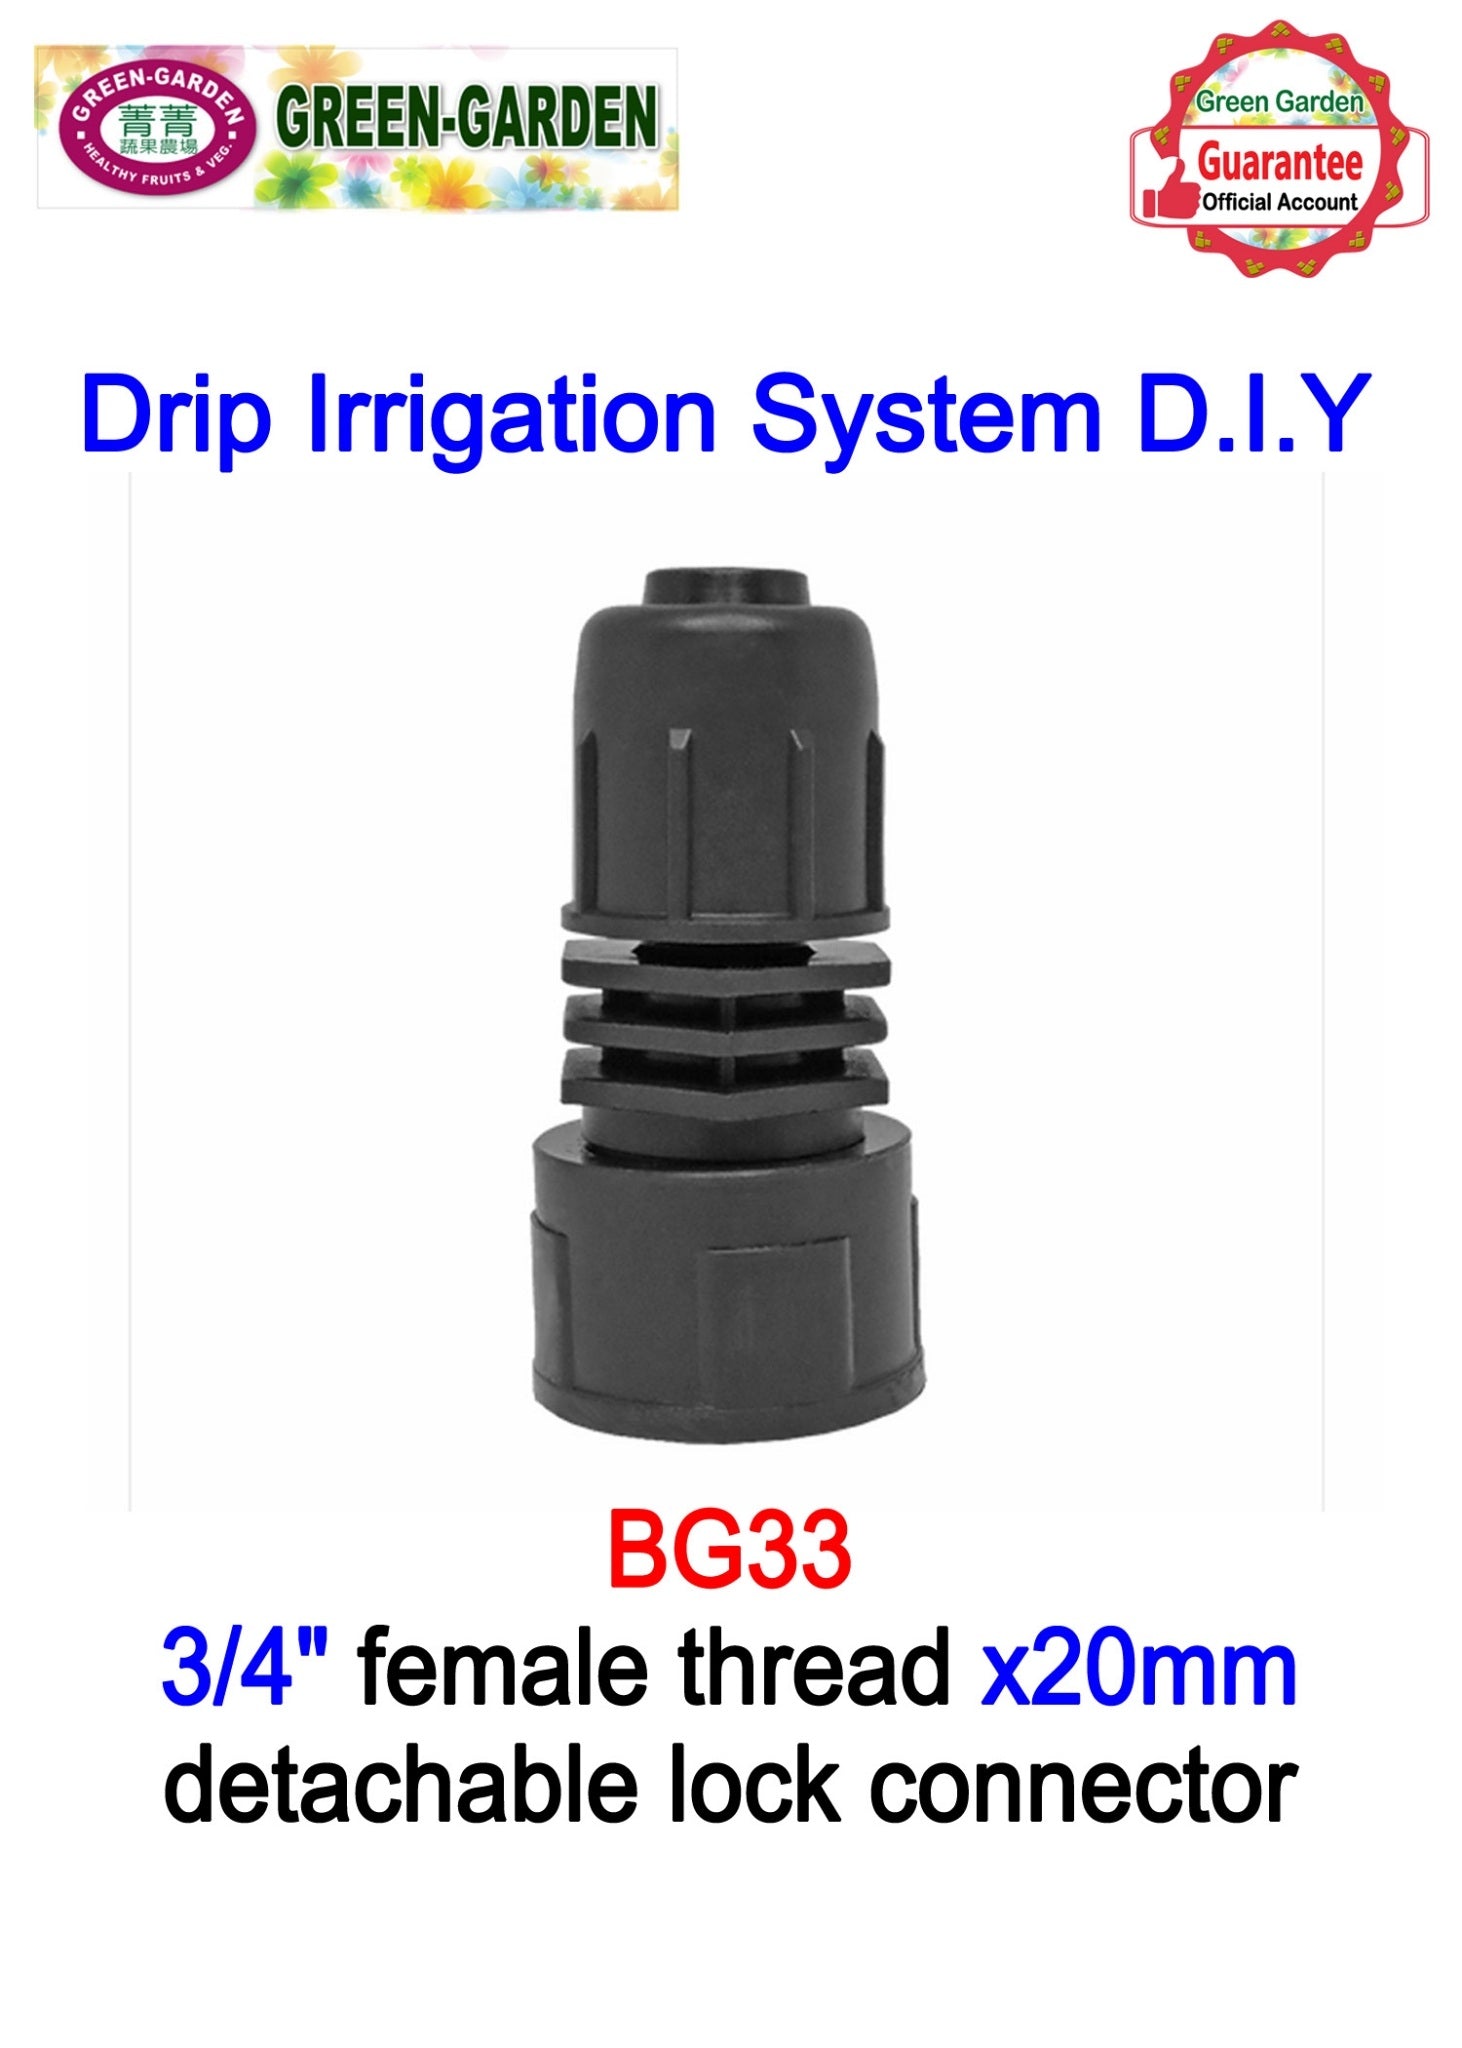 Drip Irrigation System - 3/4"female thread x 20mm detachable lock connector BG33